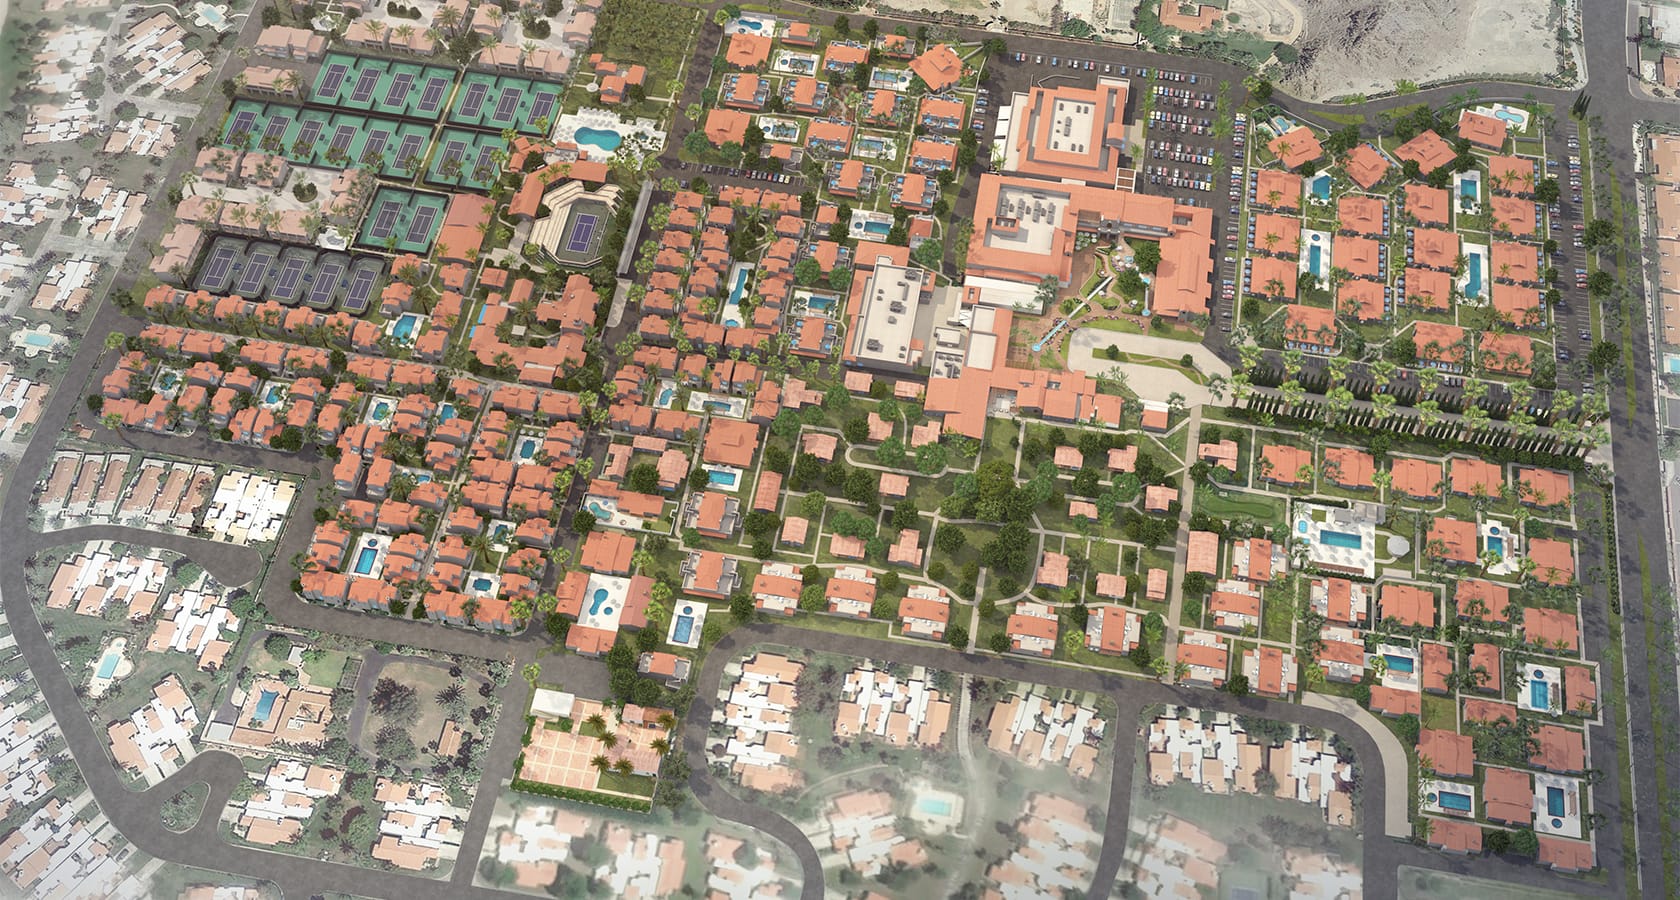 La Quinta Resort Map Gadgets 2018